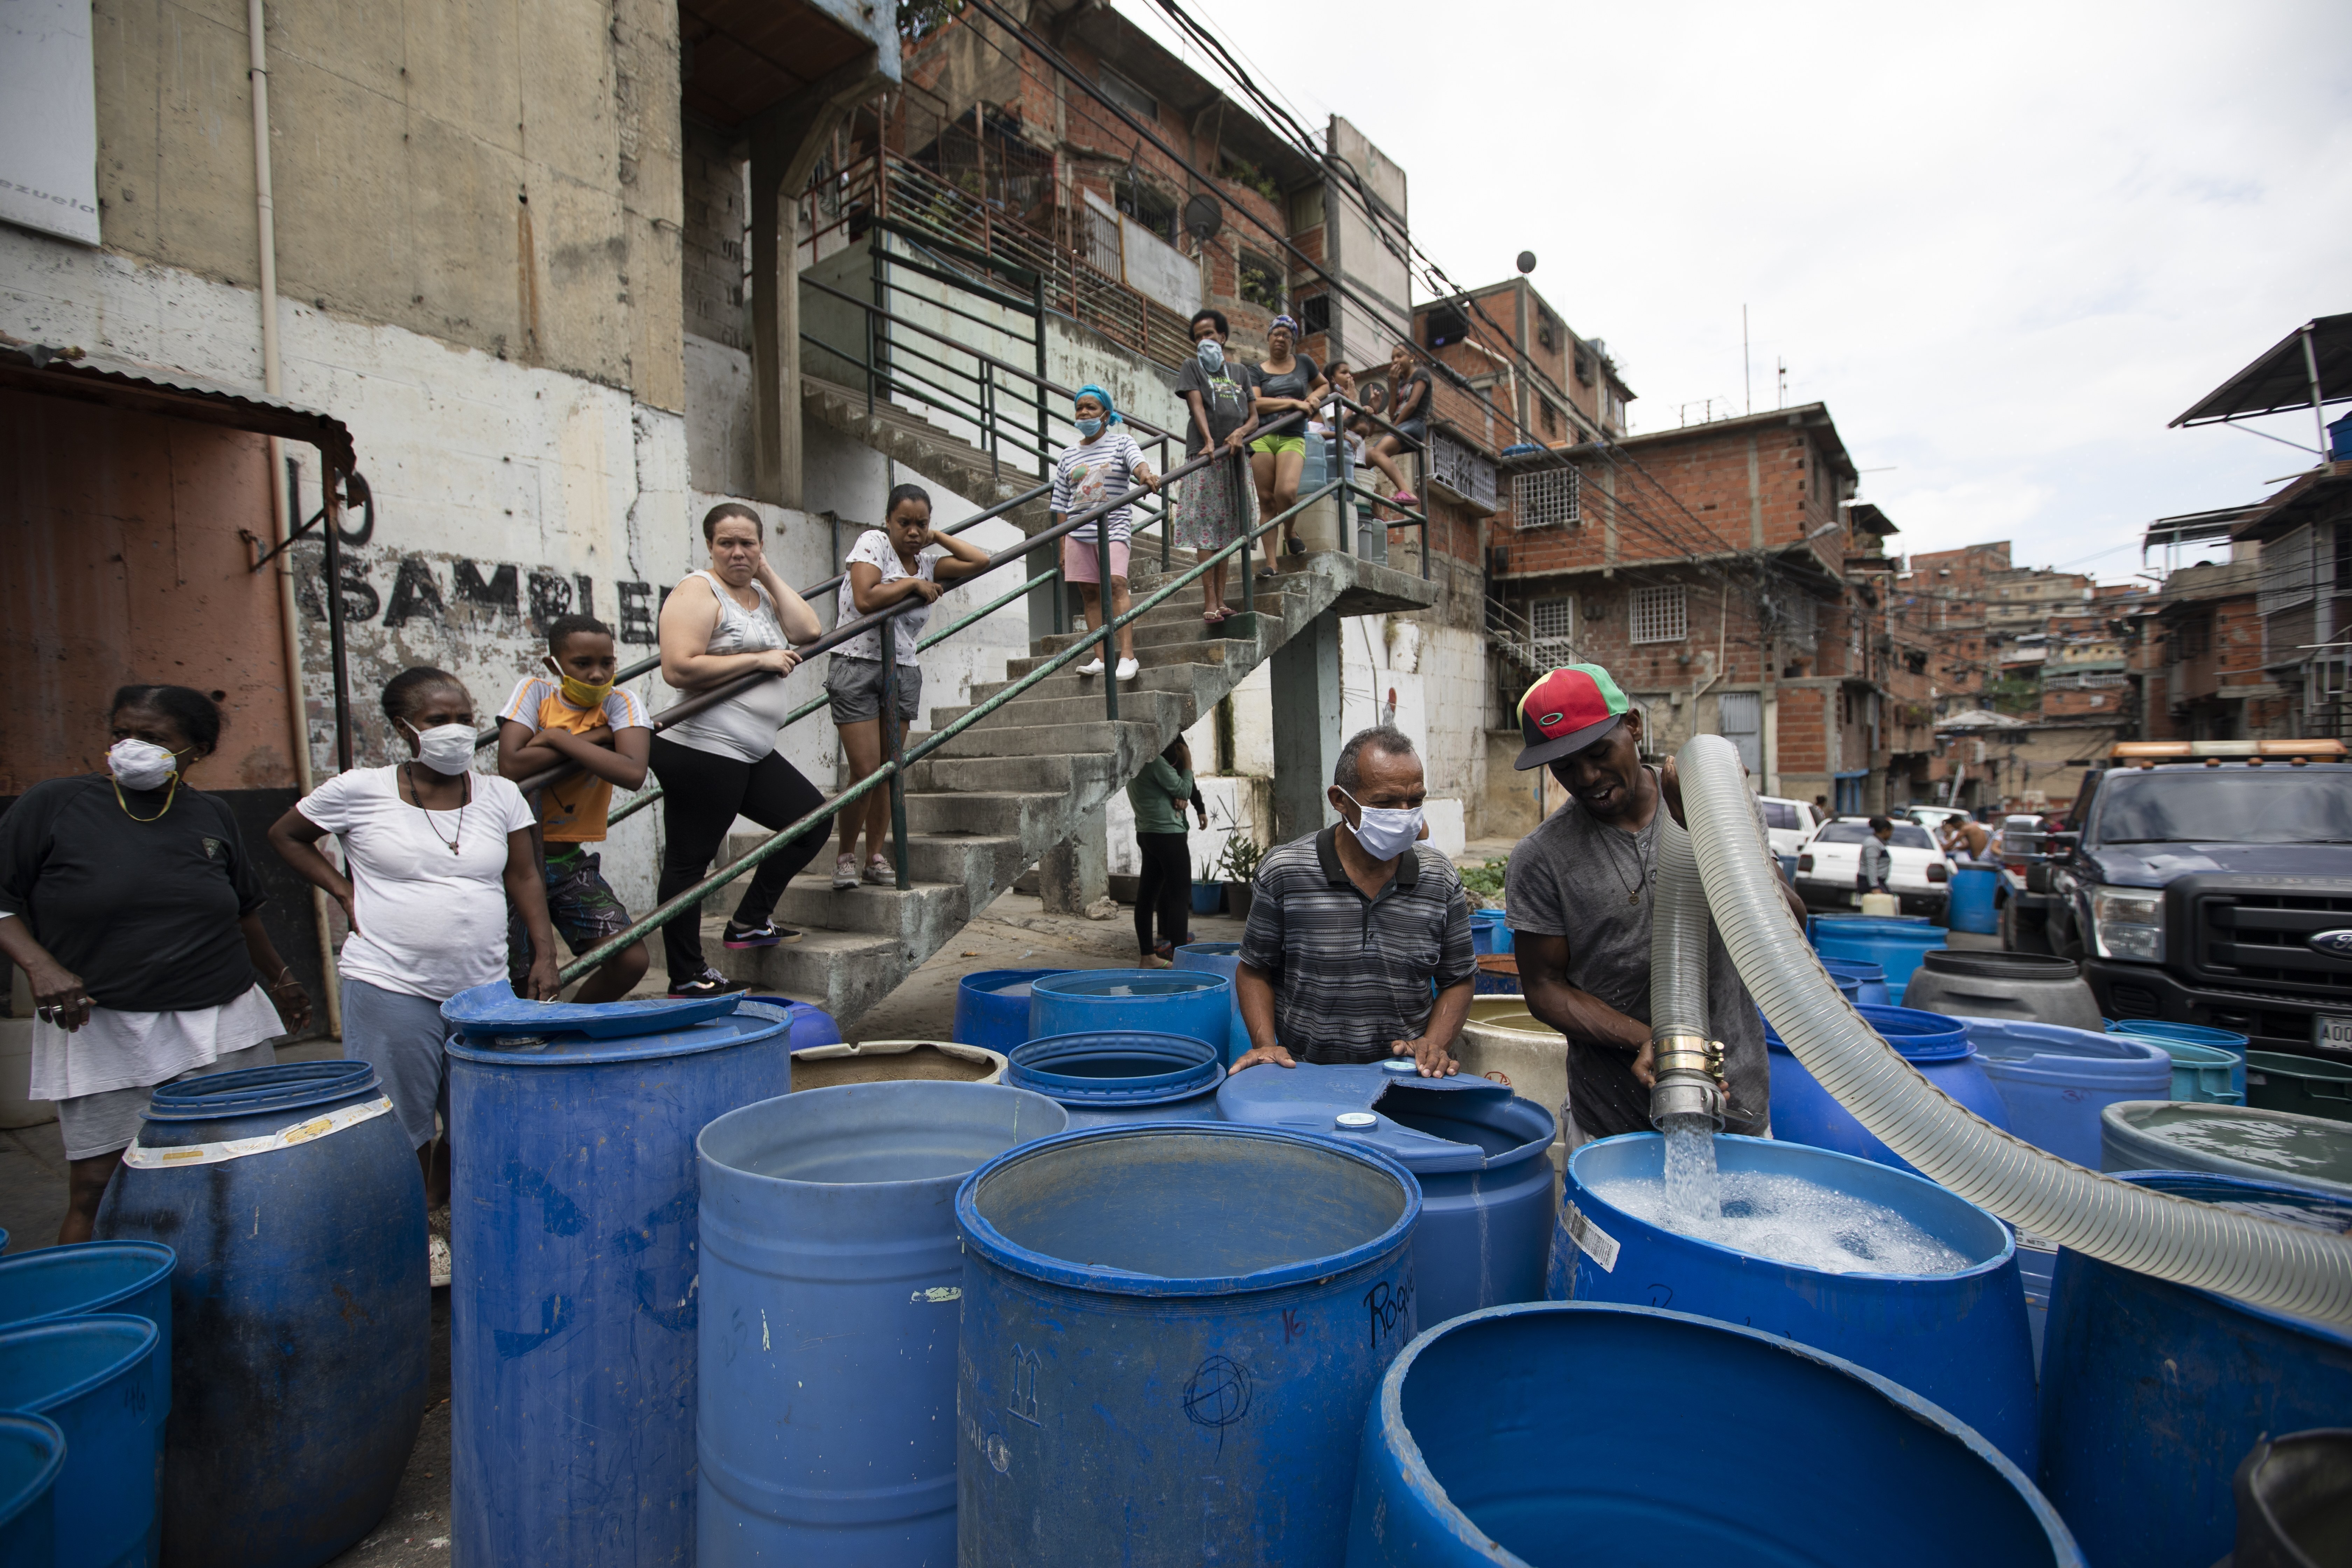 Un residente llena un recipiente con el agua distribuida por un camión cisterna gubernamental en el vecindario de Petare, en Caracas, Venezuela, el 15 de junio de 2020. El gobierno de Nicolás Maduro ha acusado a sus enemigos políticos de sabotear estaciones de bombeo, y recientemente celebró la compra de una flota de 1.000 camiones “súper cisterna” a China para llevar agua a los residentes. (AP Foto/Ariana Cubillos)